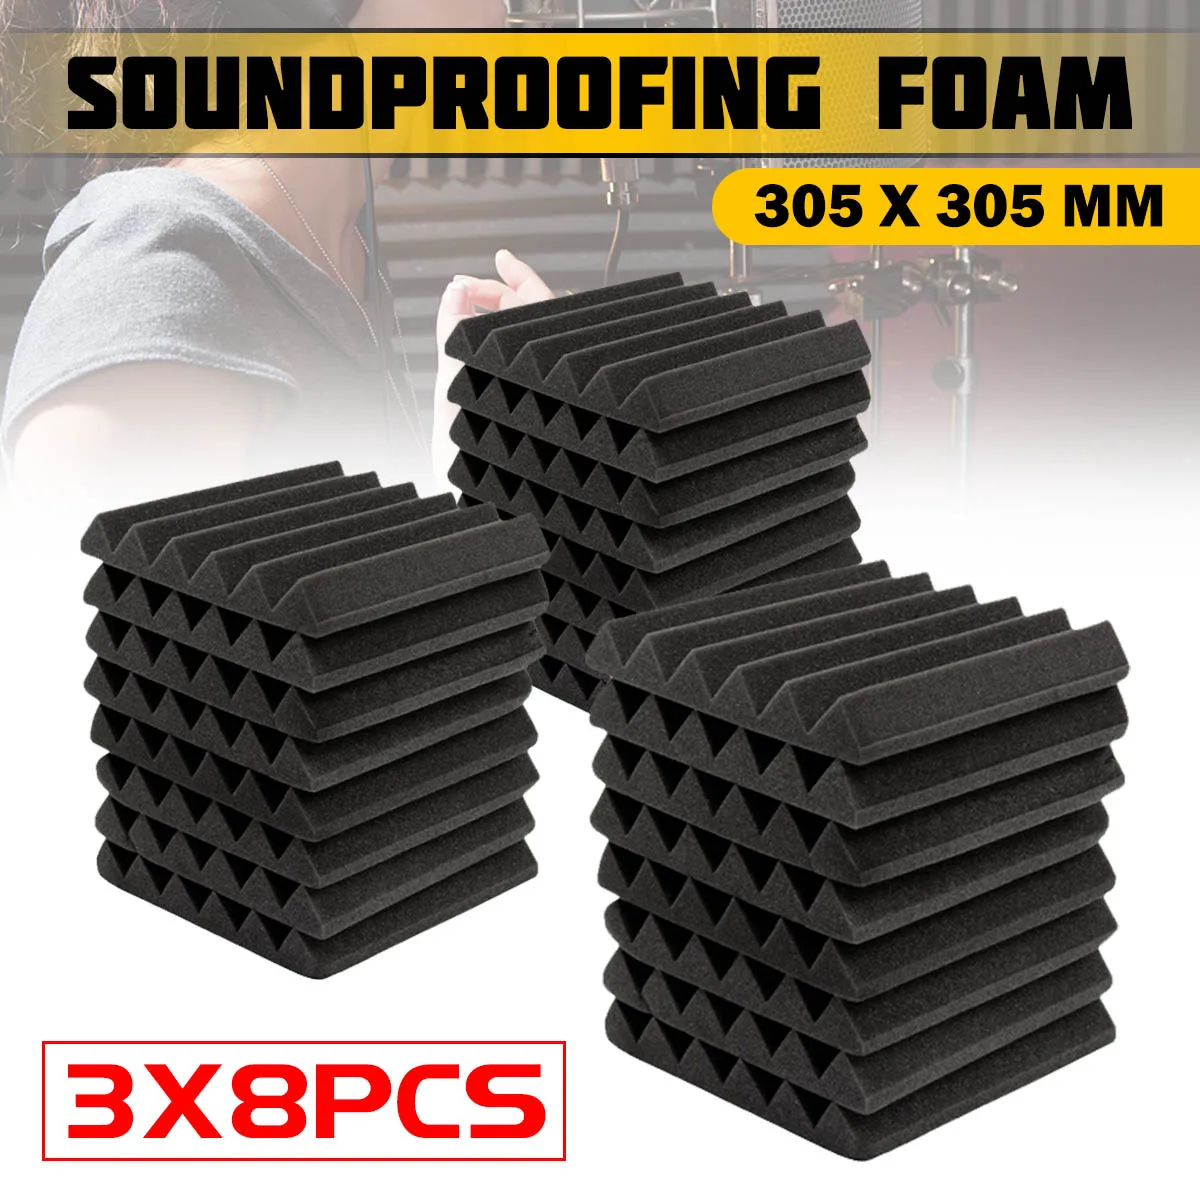 3x8Pcs Soundproofing Foam Acoustic Foam Sound Treatment 305 x 305 x ...